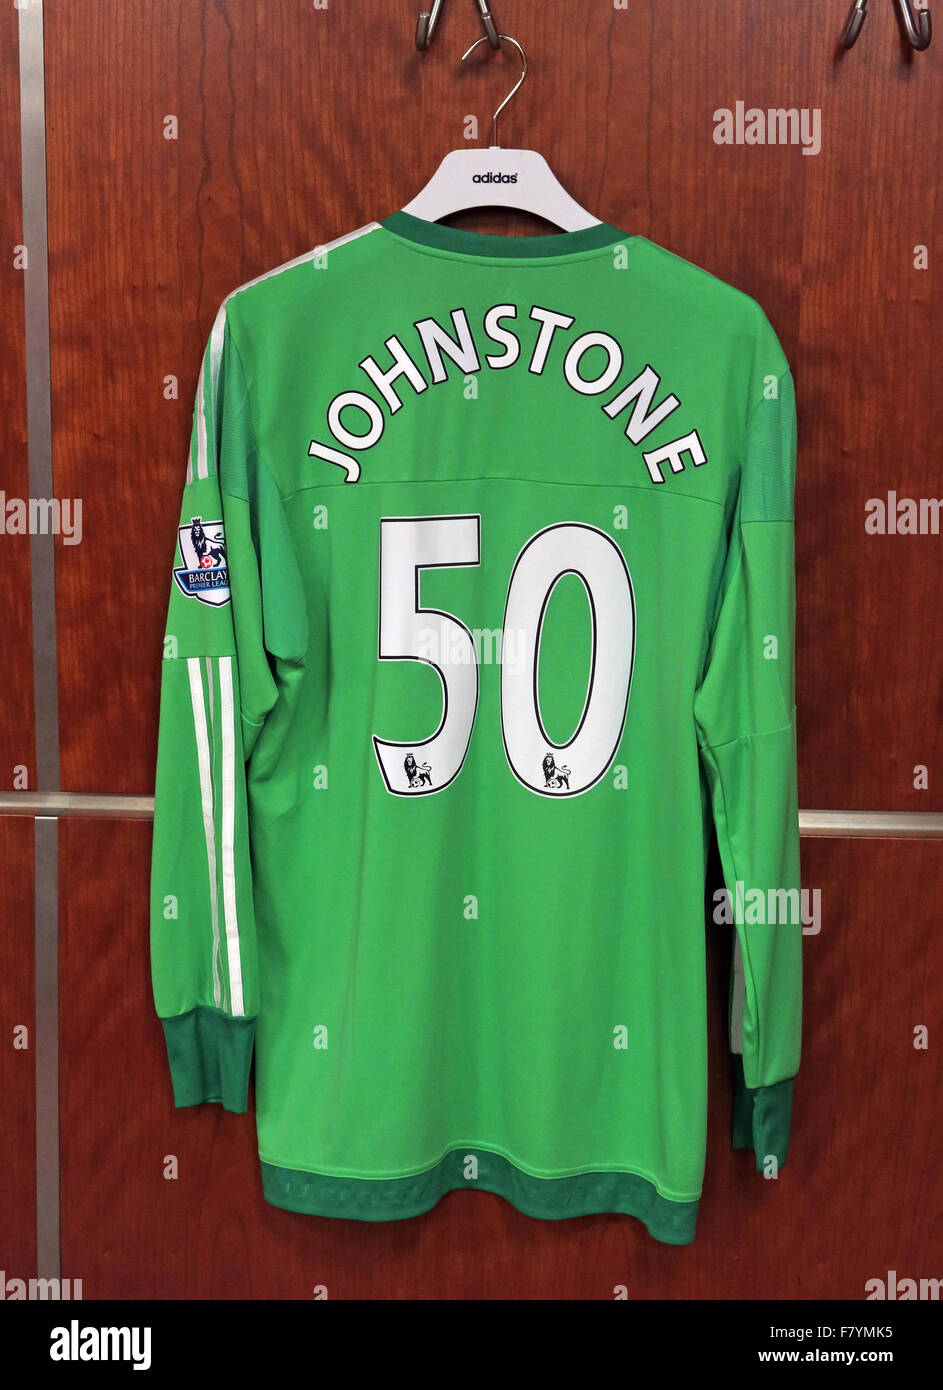 Samuel Luke 'Sam' Johnstone camicia verde in MUFC spogliatoio, Old Trafford Foto Stock